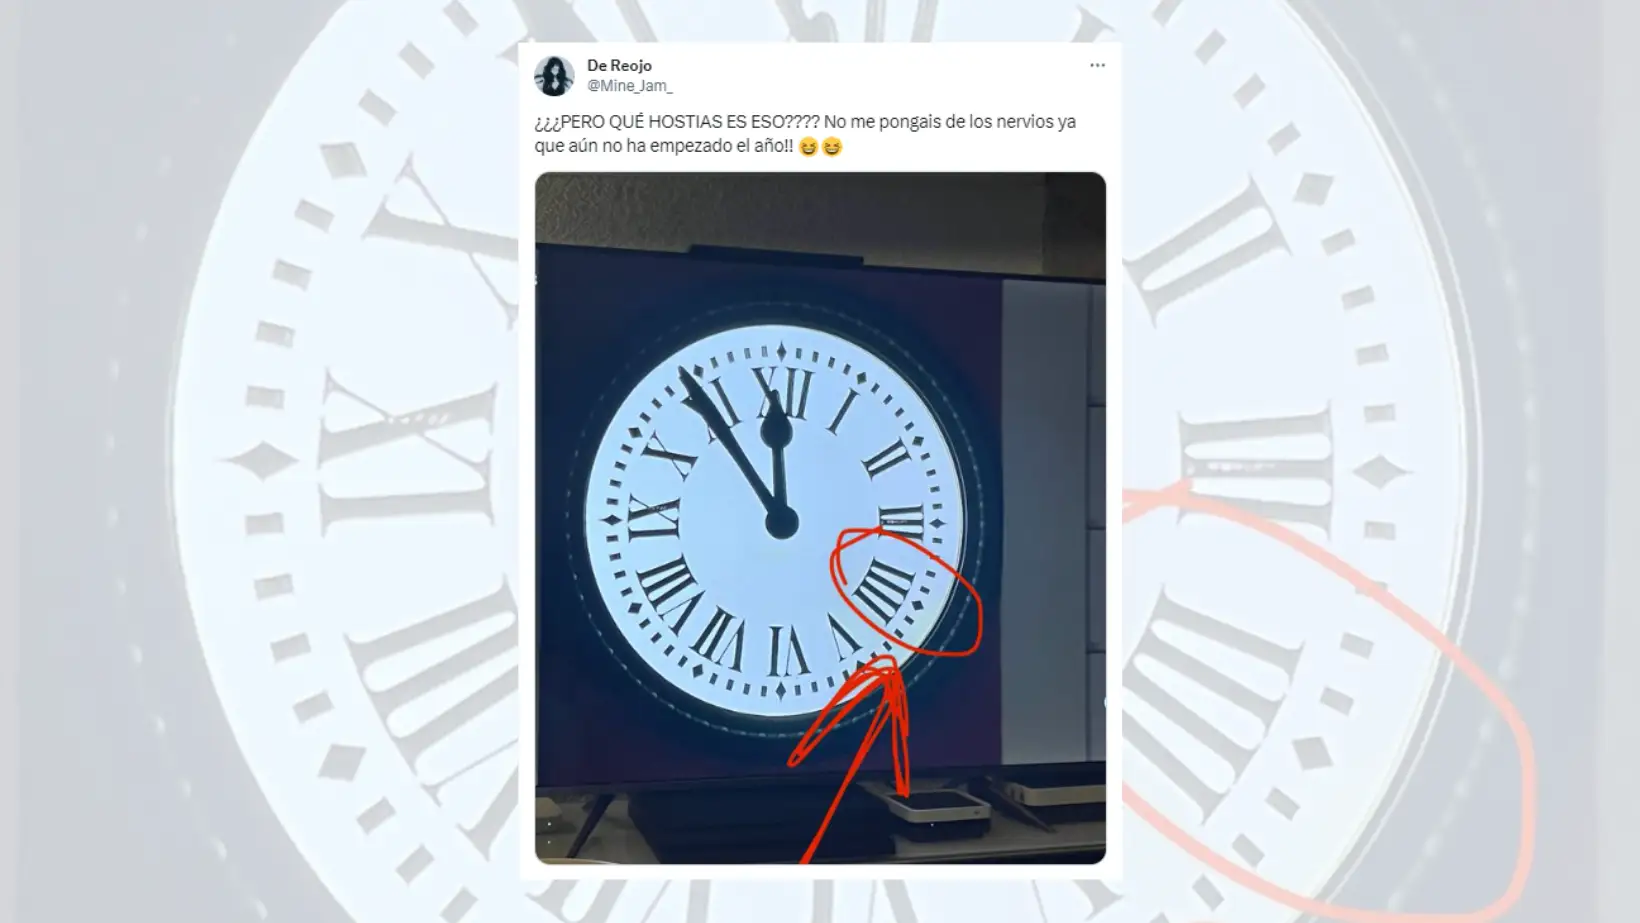 Tuit criticando el reloj por tener el cuatro escrito como IIII.